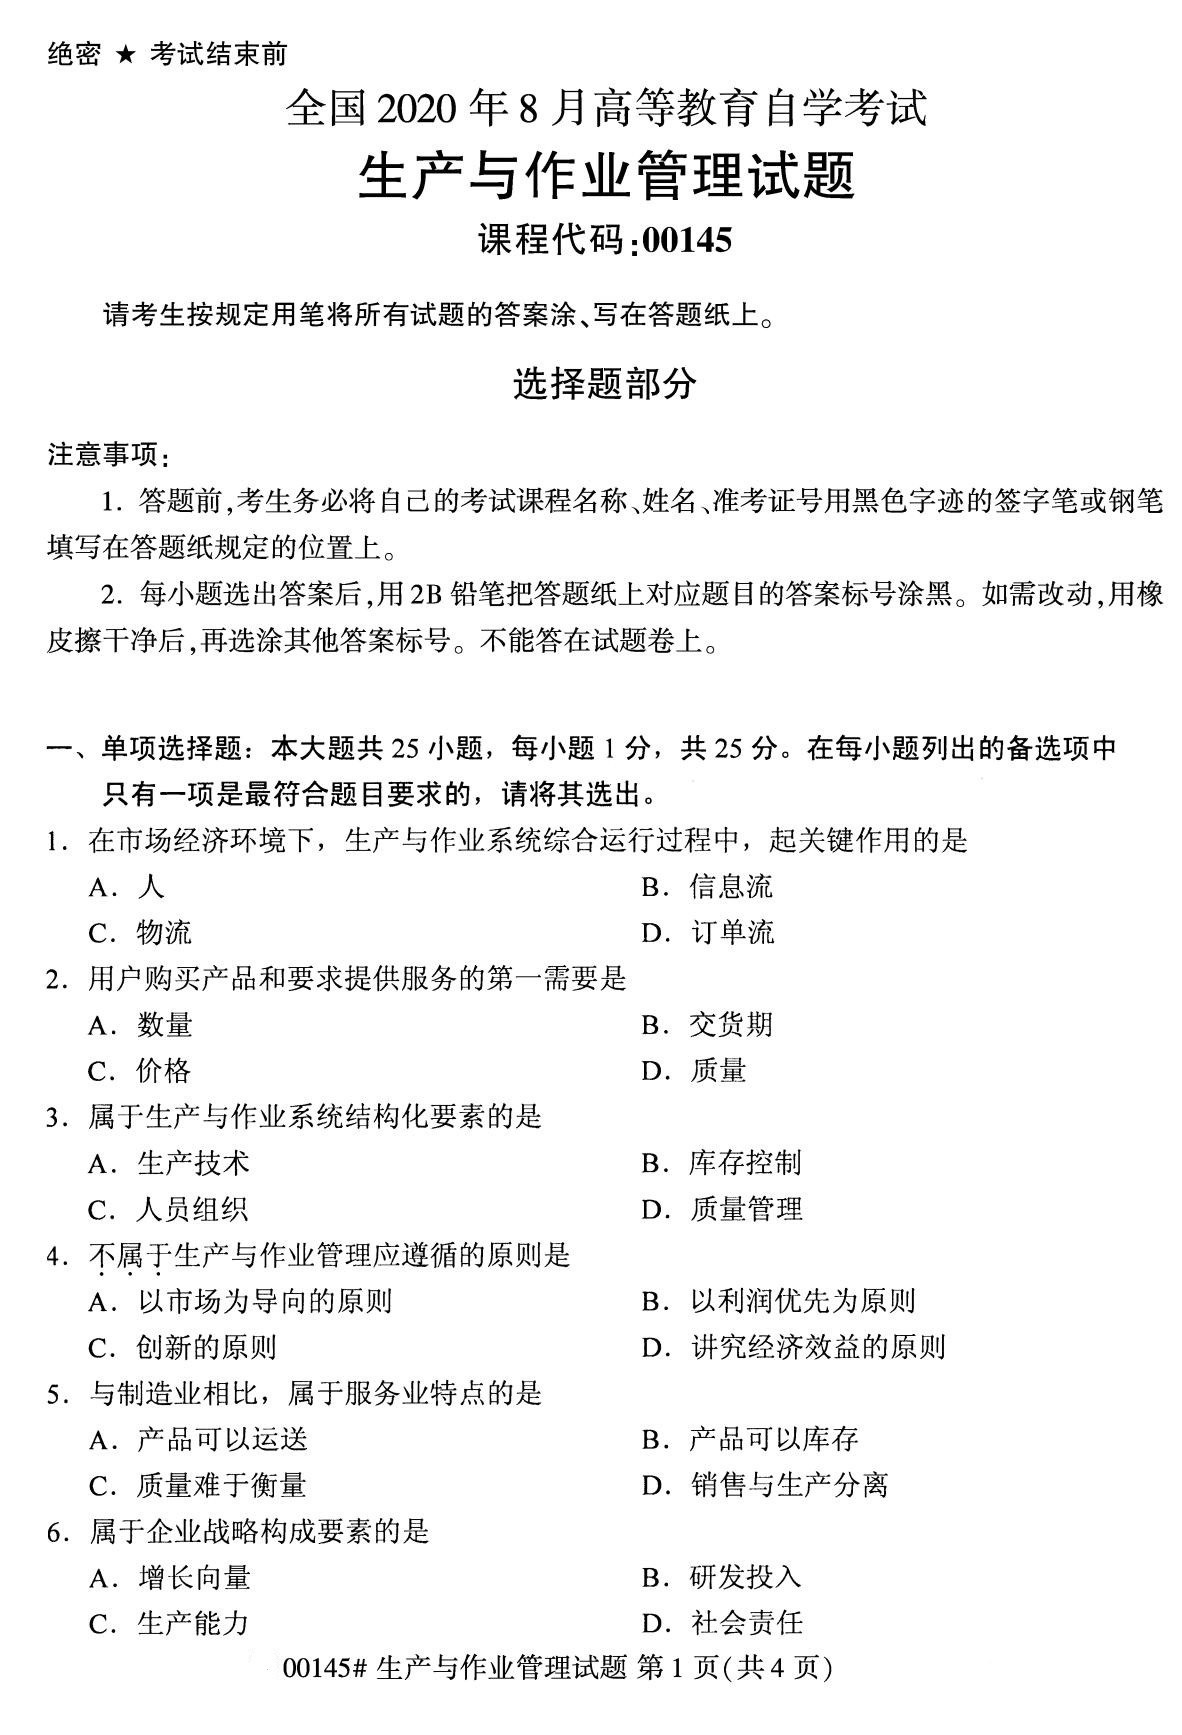 　　其他2020年8月试题可查看自考试卷栏目，更多自考资讯可关注上海自考网。